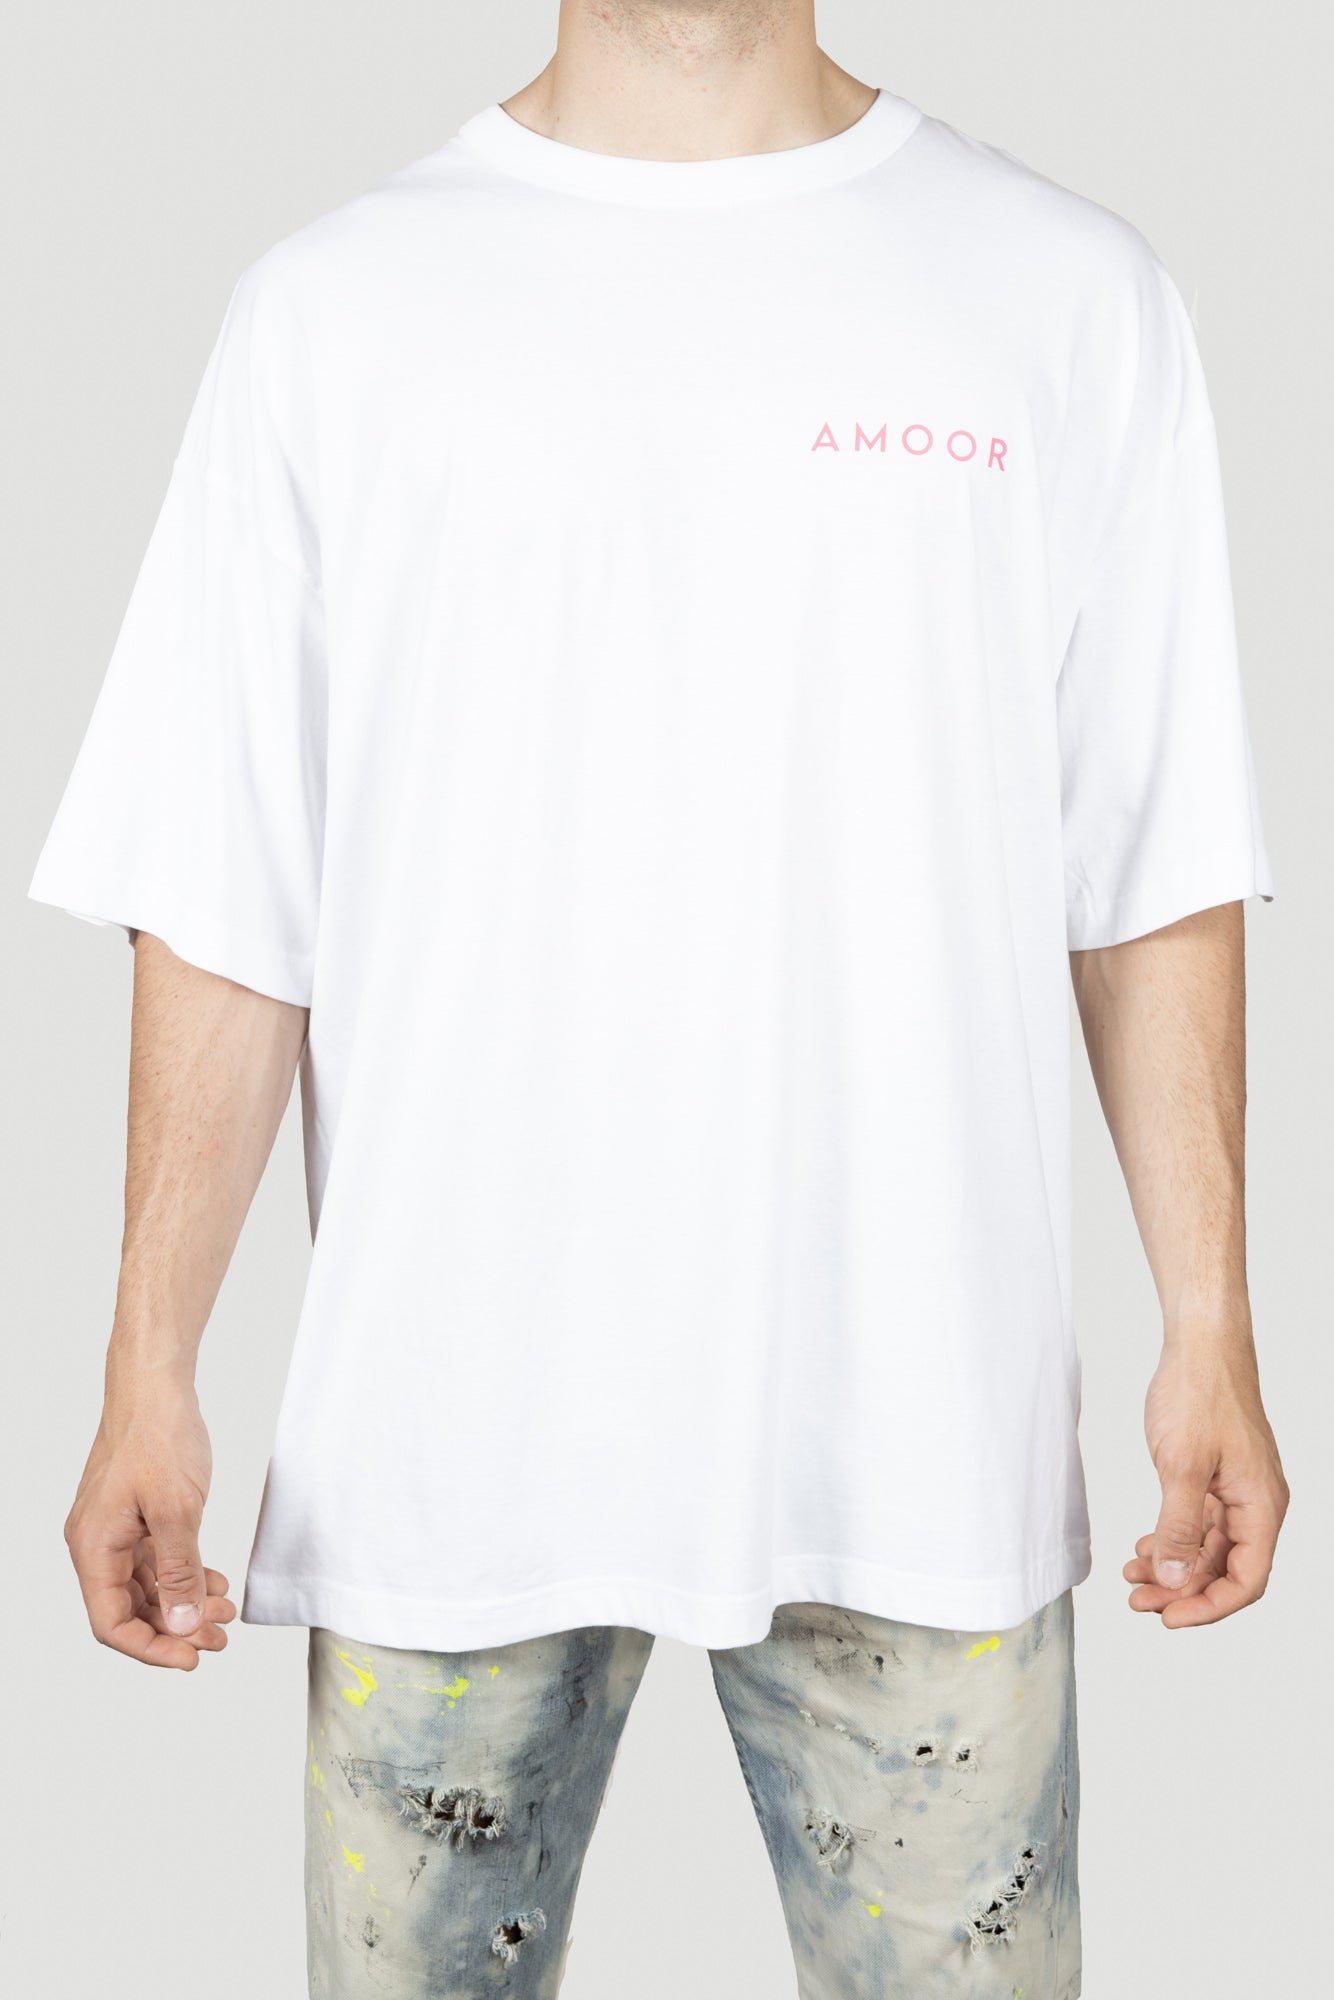 T-Shirt AMOOR Medium